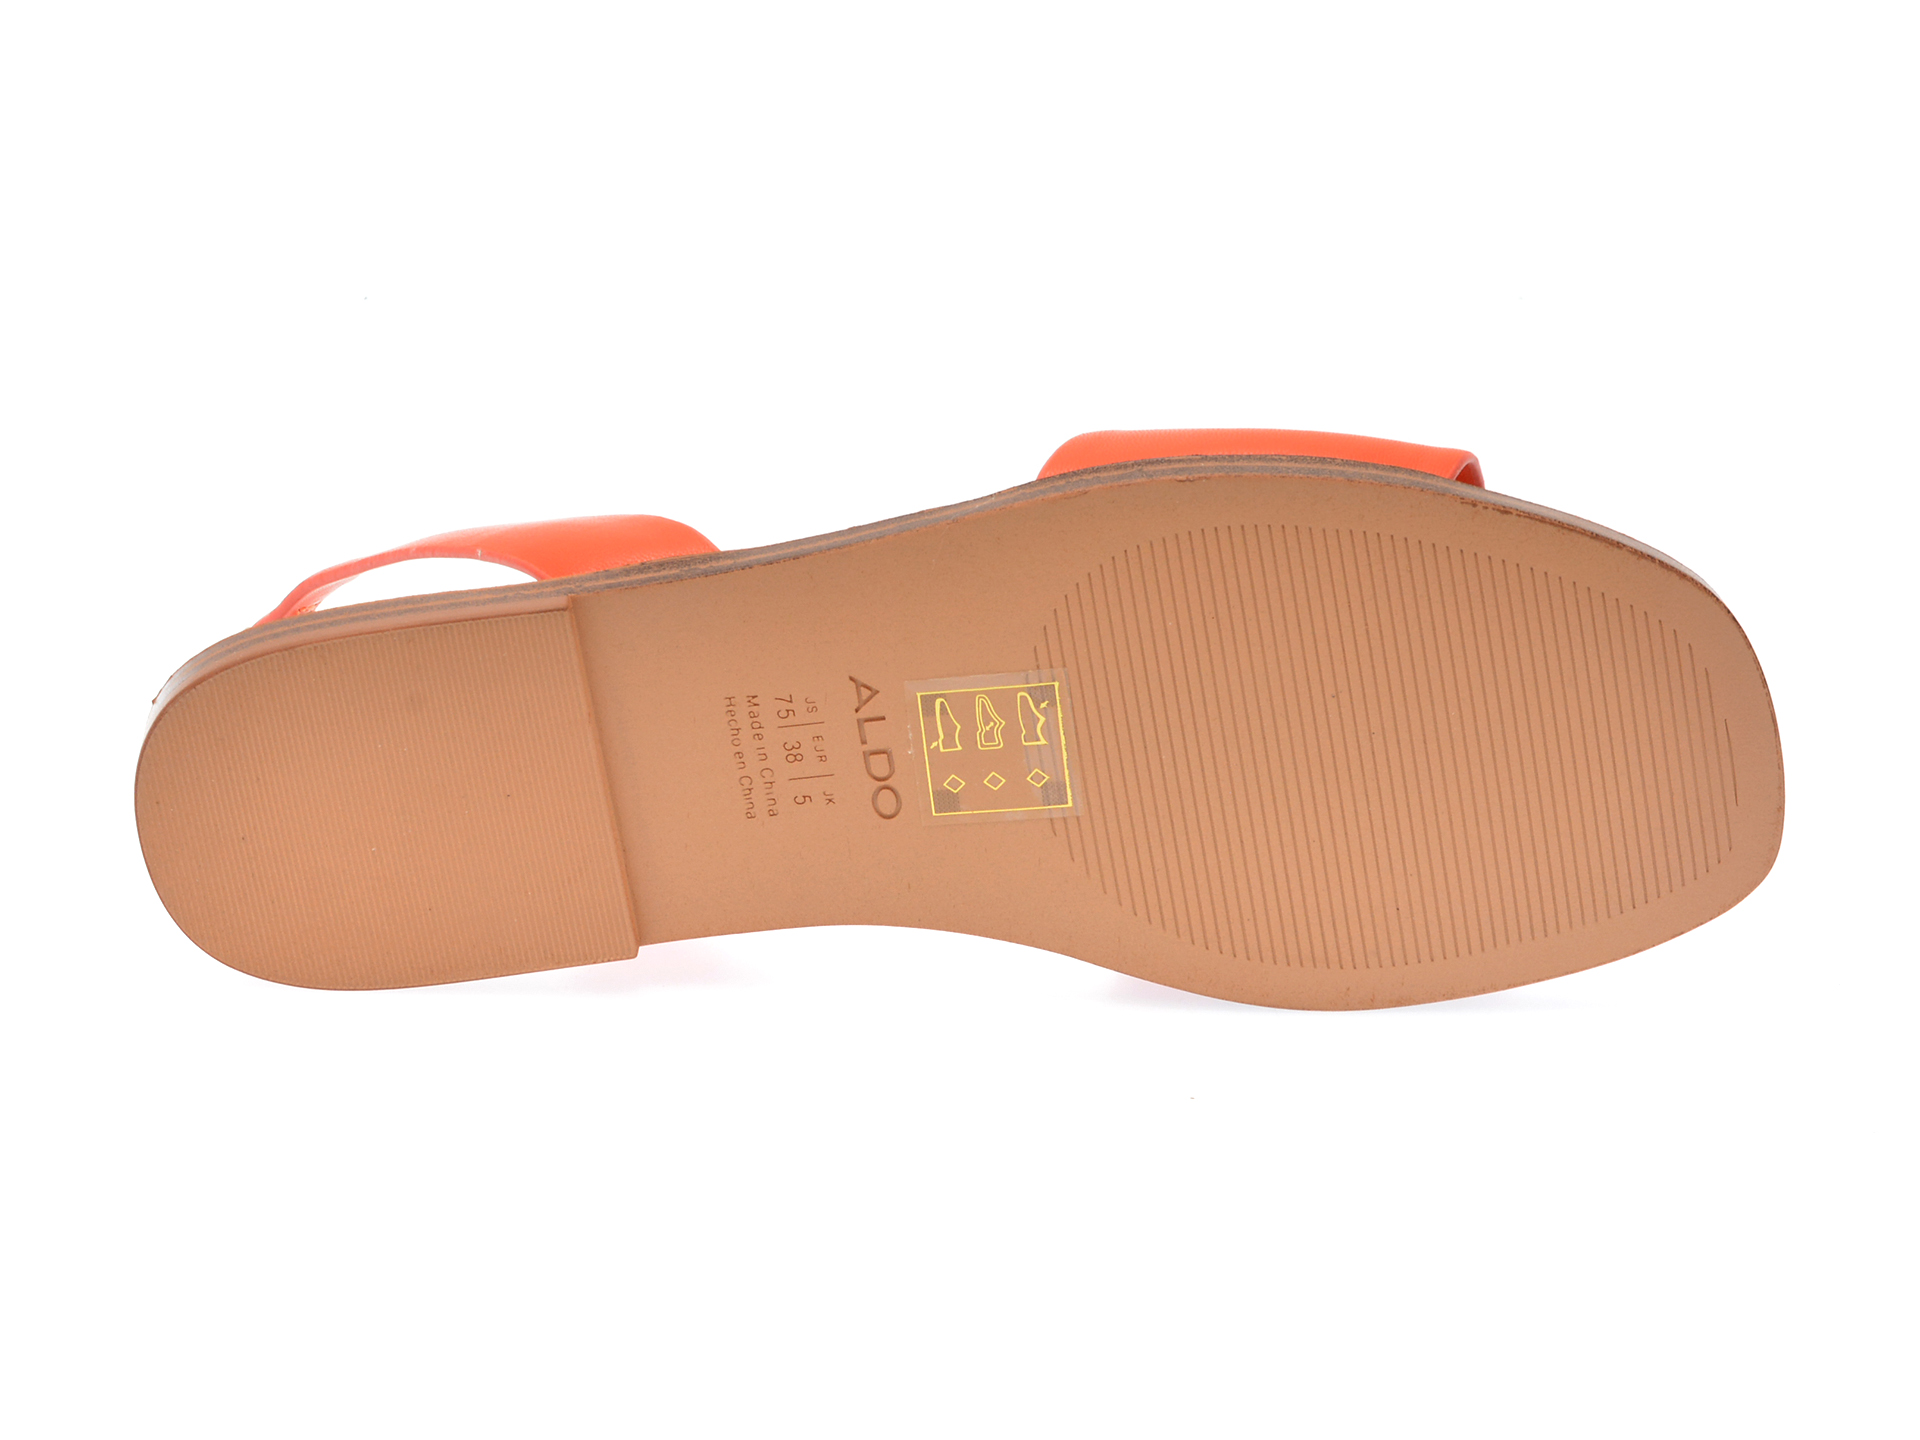 Sandale ALDO portocalii, HILARY800, din piele ecologica